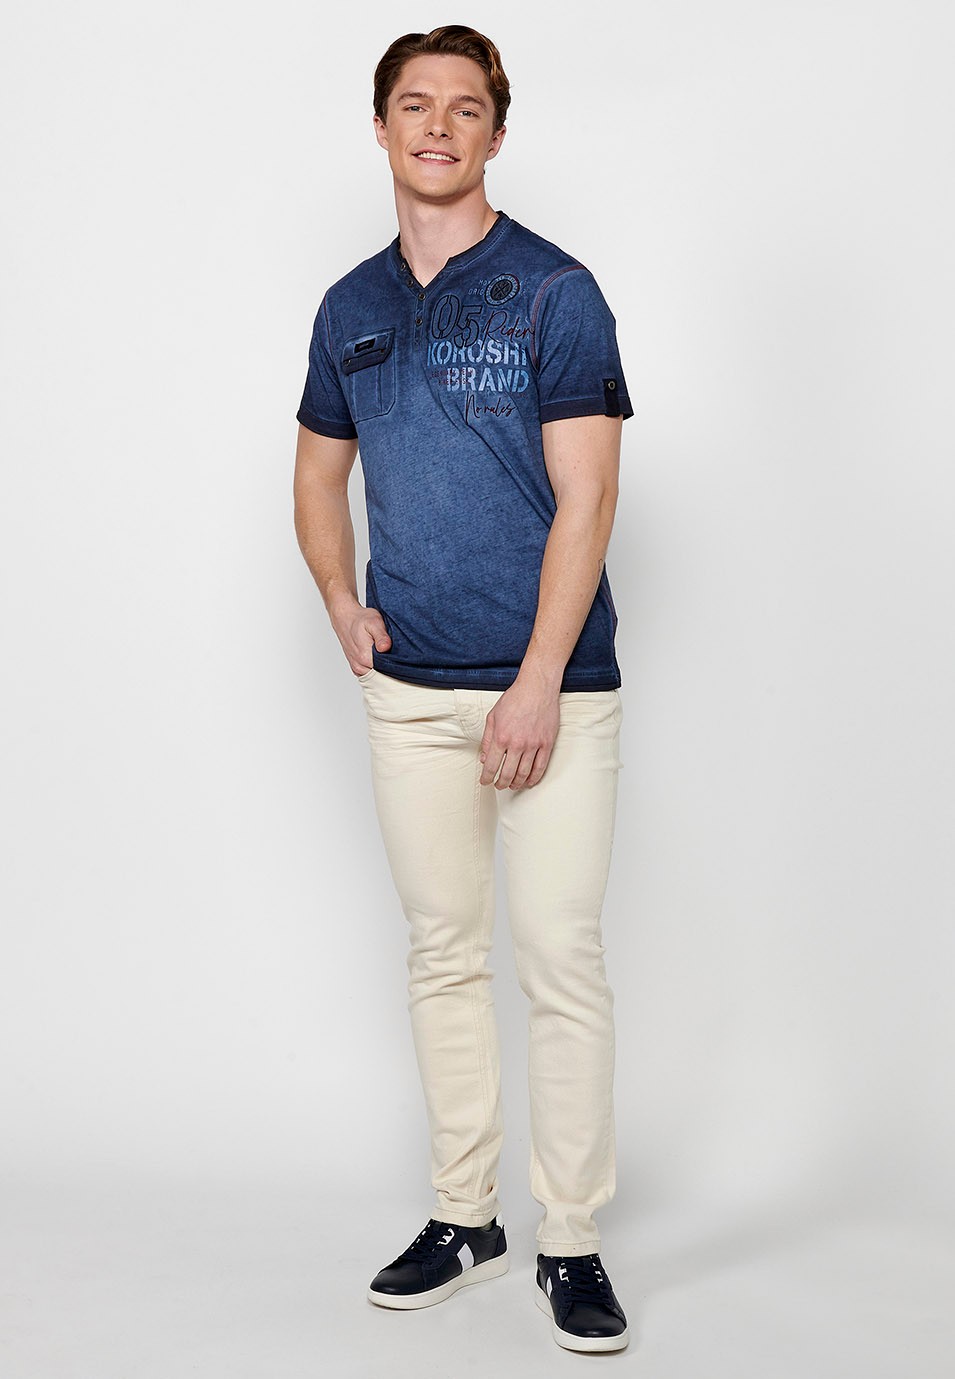 Blaues, kurzärmliges Herren-T-Shirt mit Knopfleiste und Rundhalsausschnitt